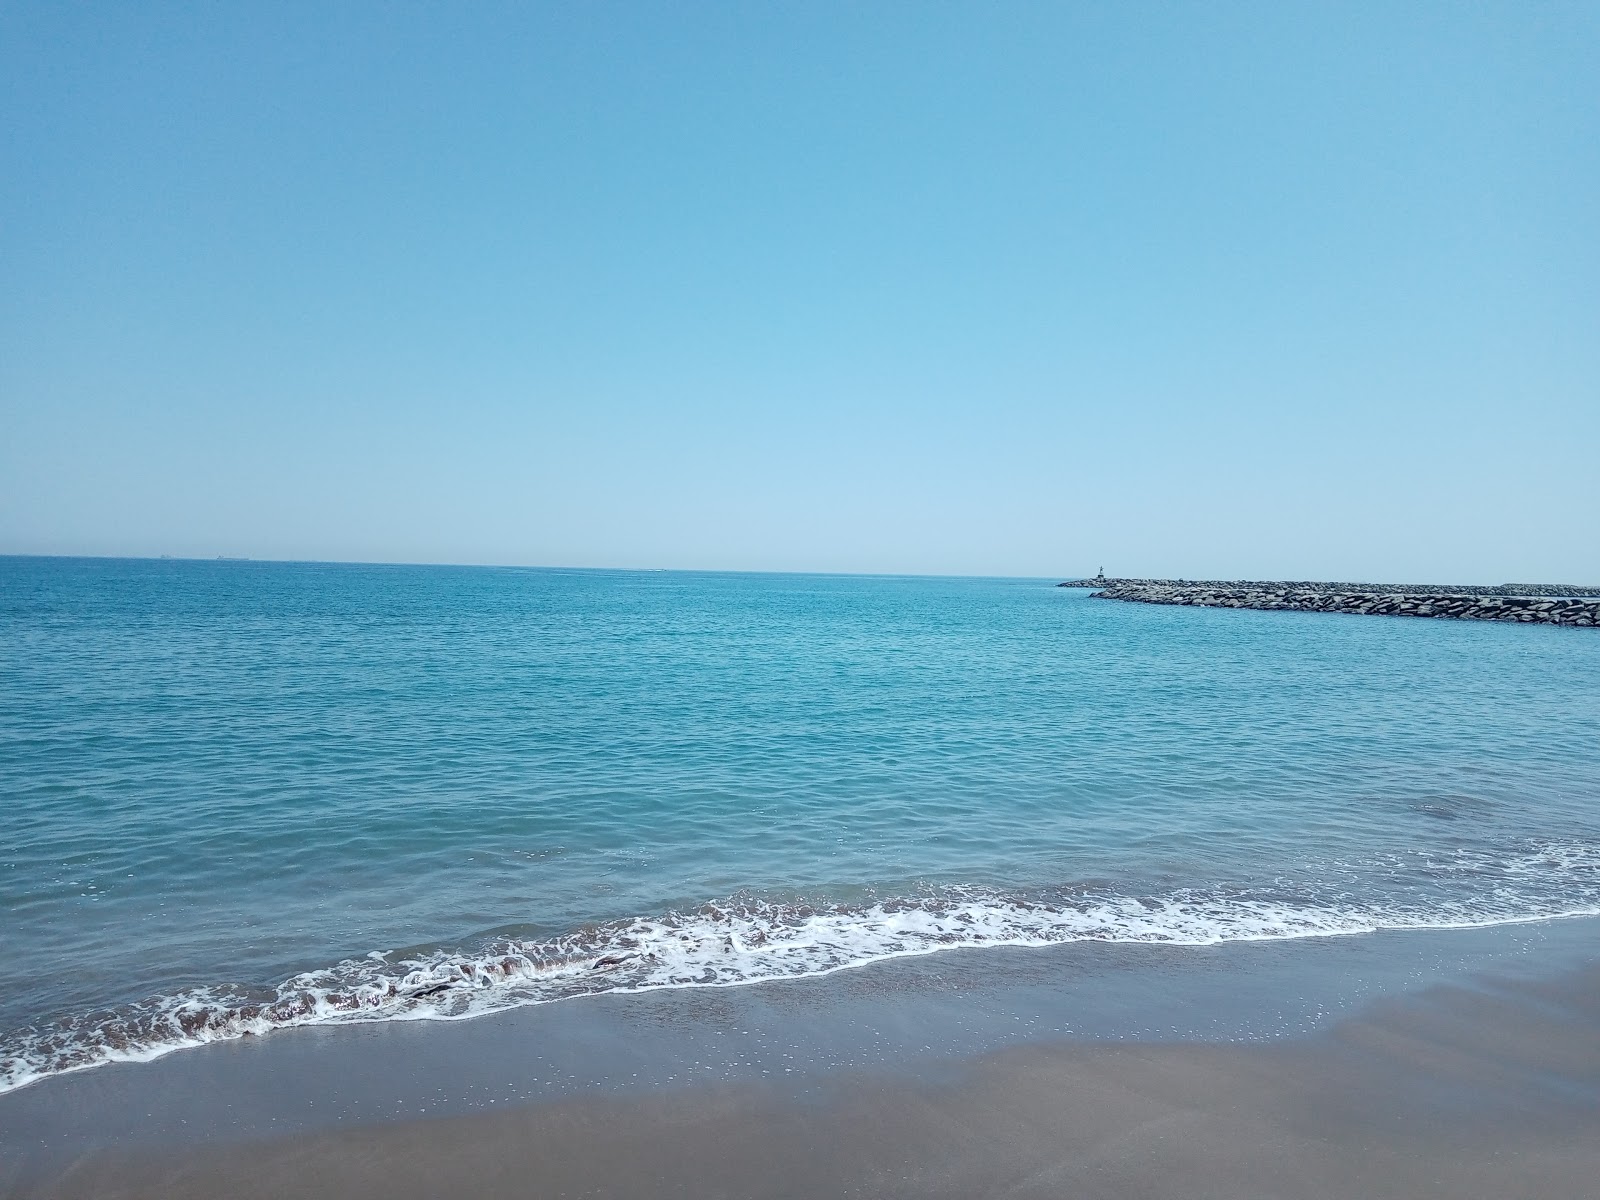 Fujairah Corniche Beach'in fotoğrafı geniş plaj ile birlikte